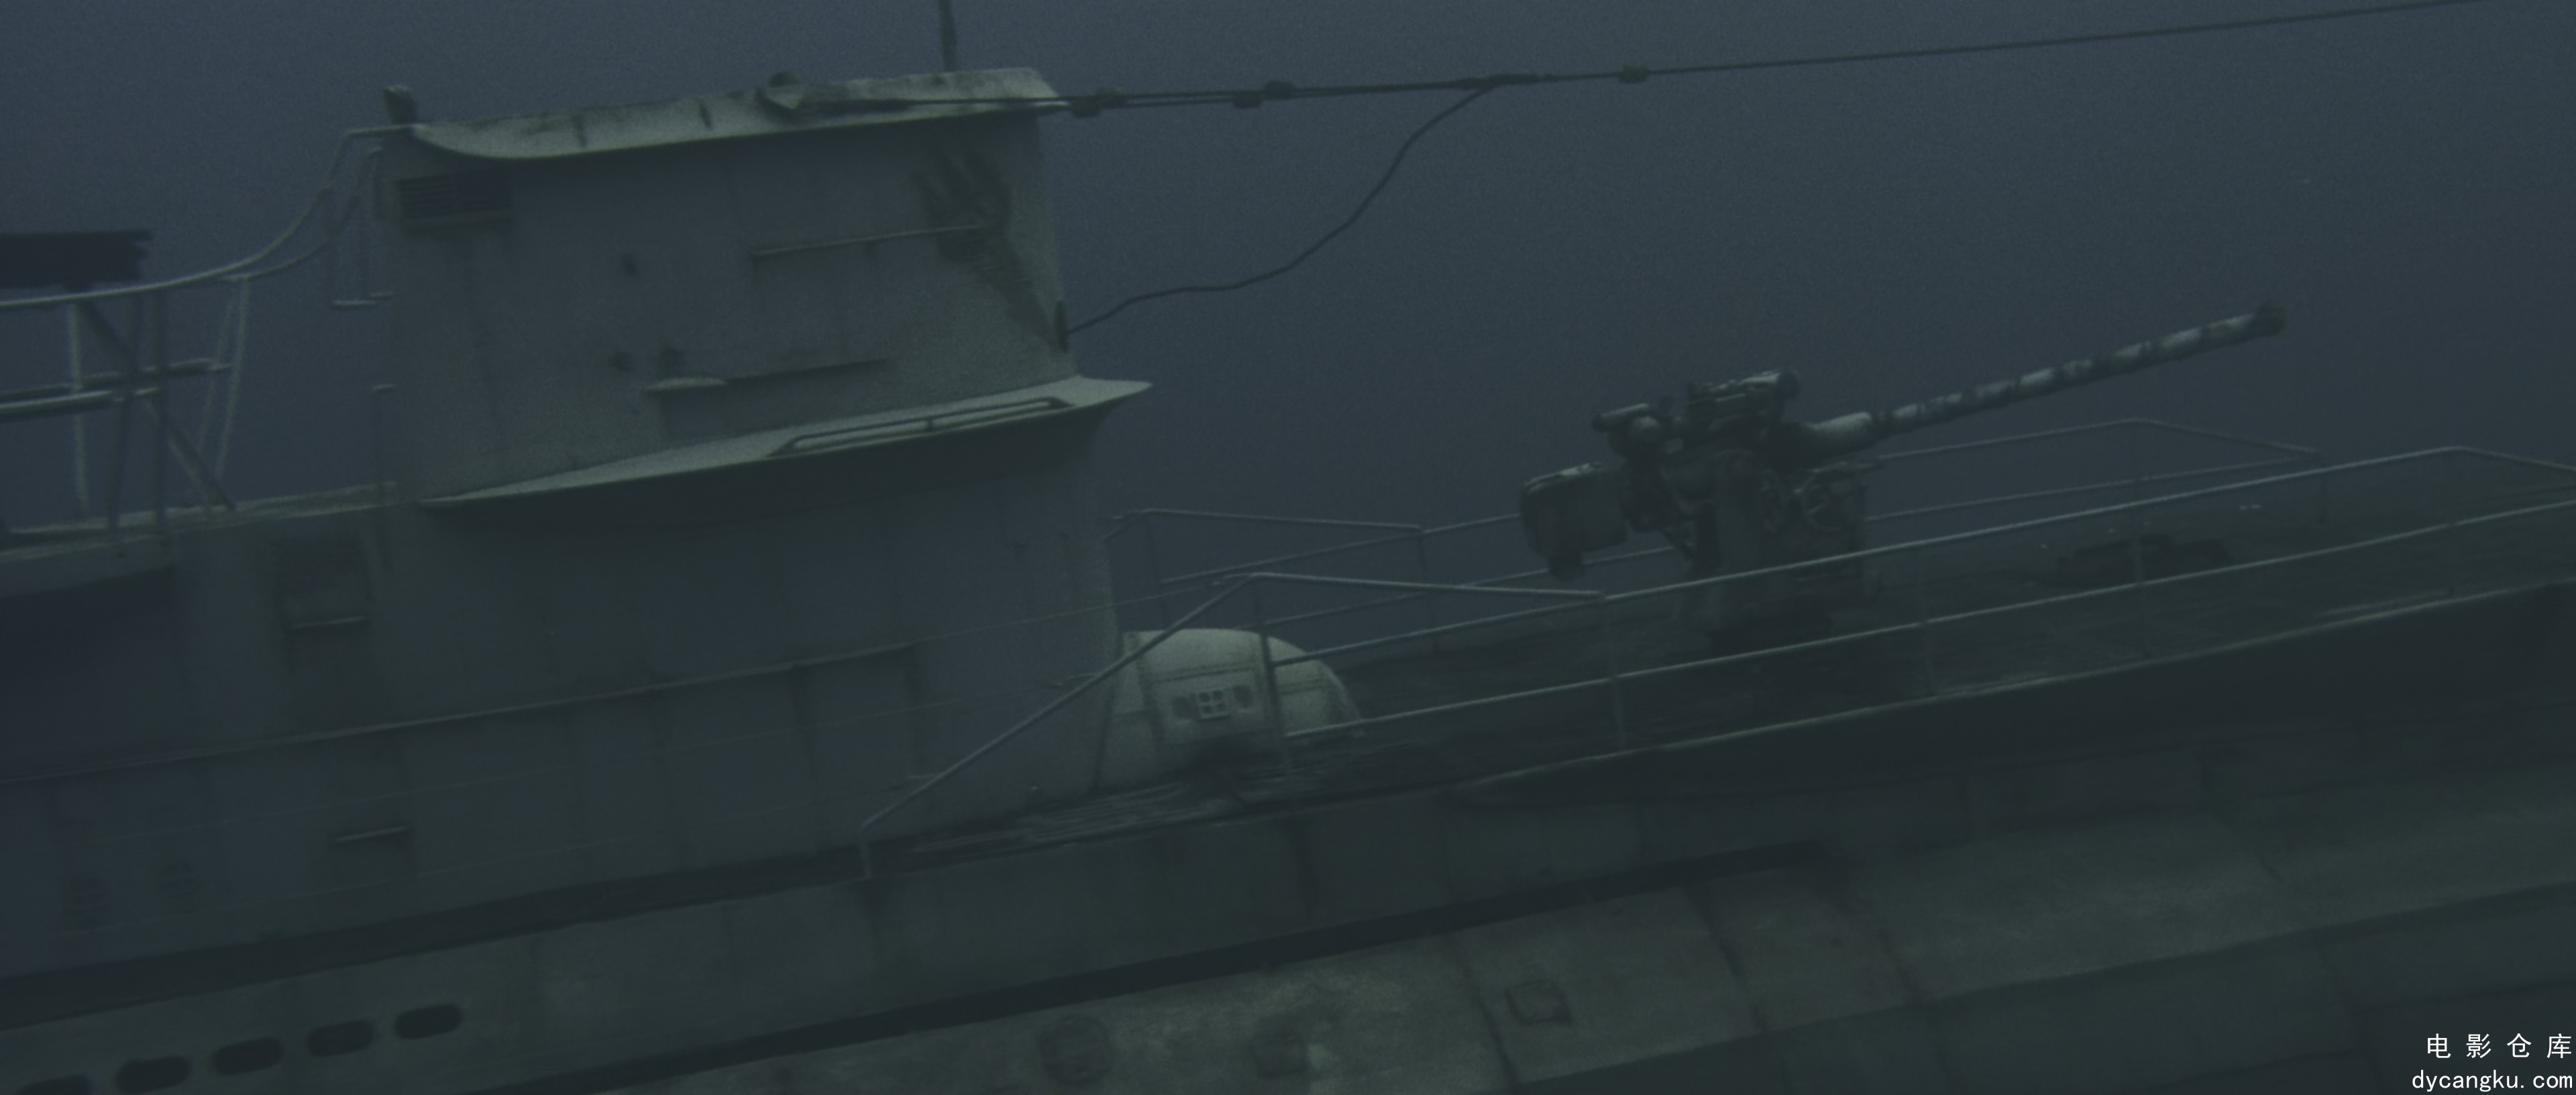 [电影仓库dycangku.com]猎杀U-571.2000.2160p.BluRay.DoVi.x265.10bit.DTS-CTRLHD.mkv.jpg